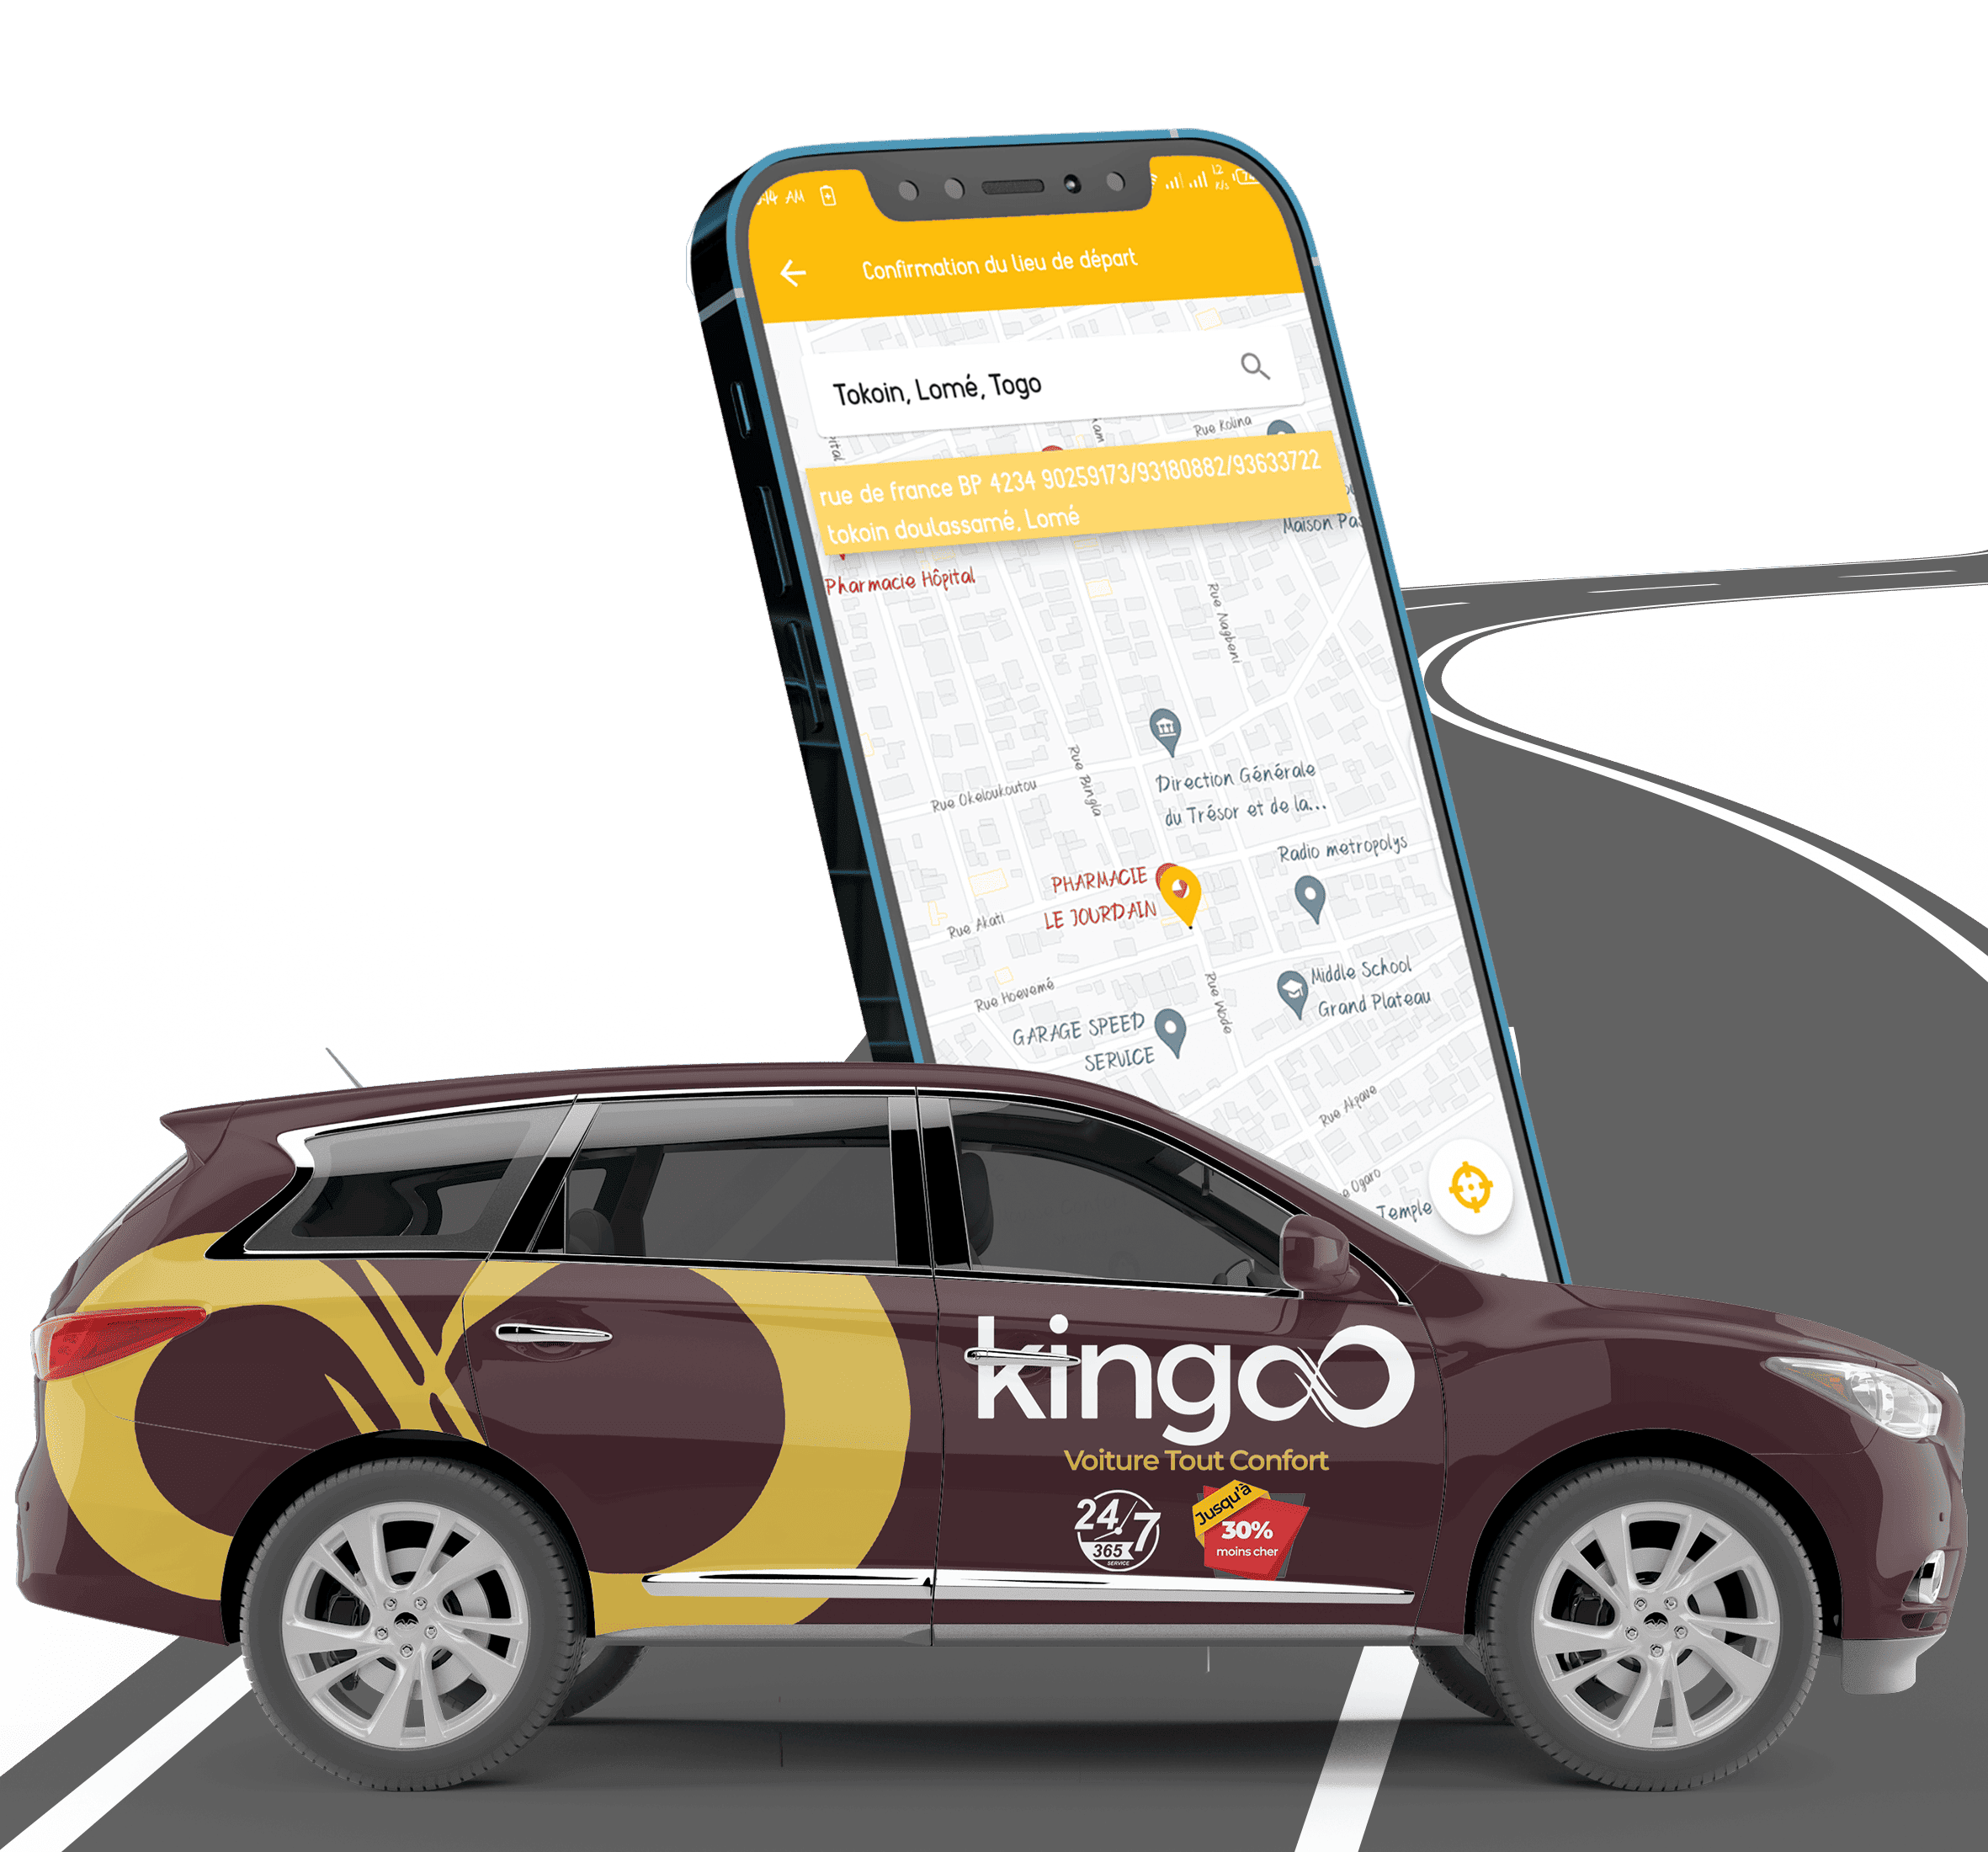 Kingoo Application